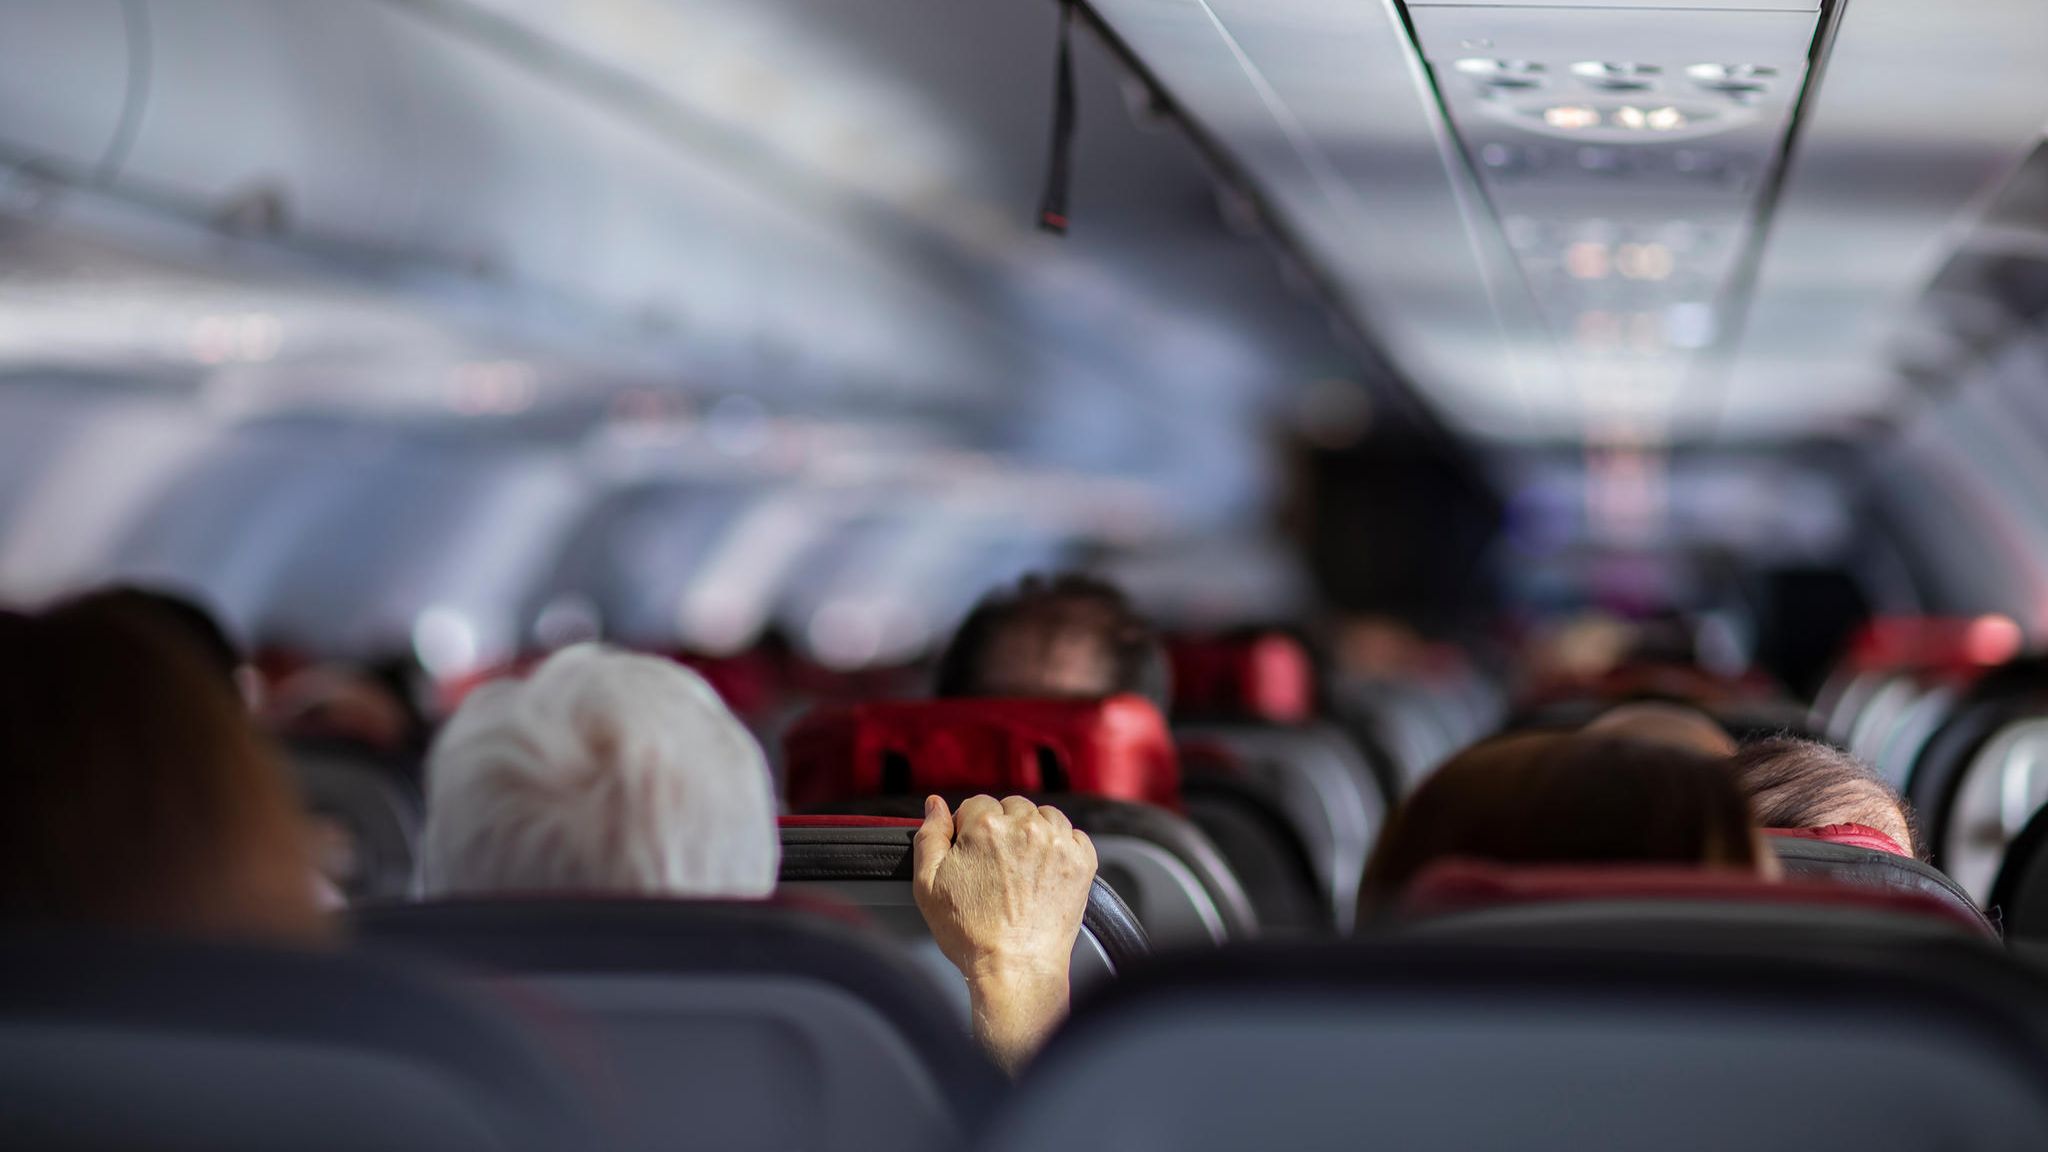 Fluggast verschickt Sex-Bilder an Passagiere und wird festgenommen STERN.de Foto